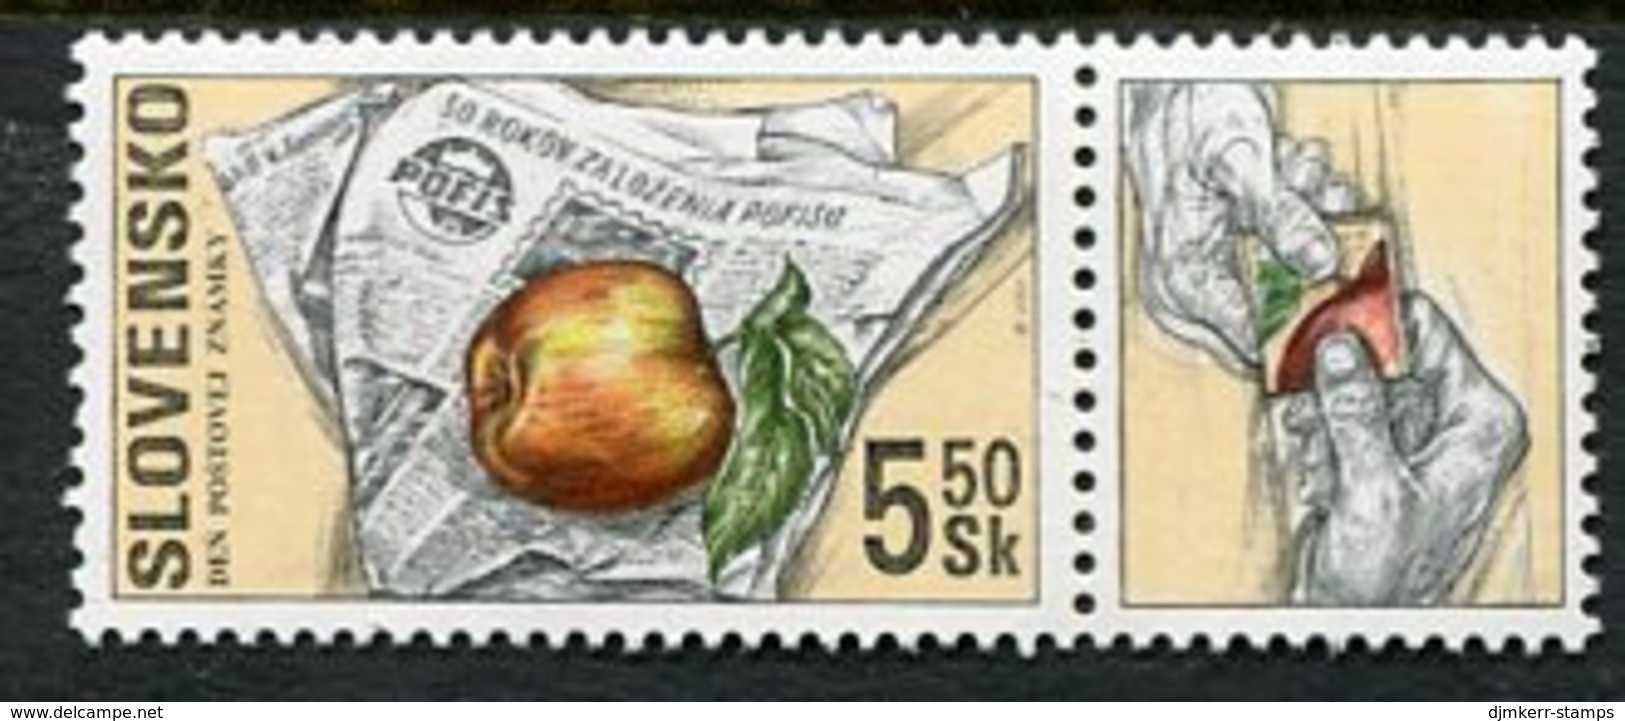 SLOVAKIA 2000 Stamp Day MNH / **  Michel 383 - Ongebruikt